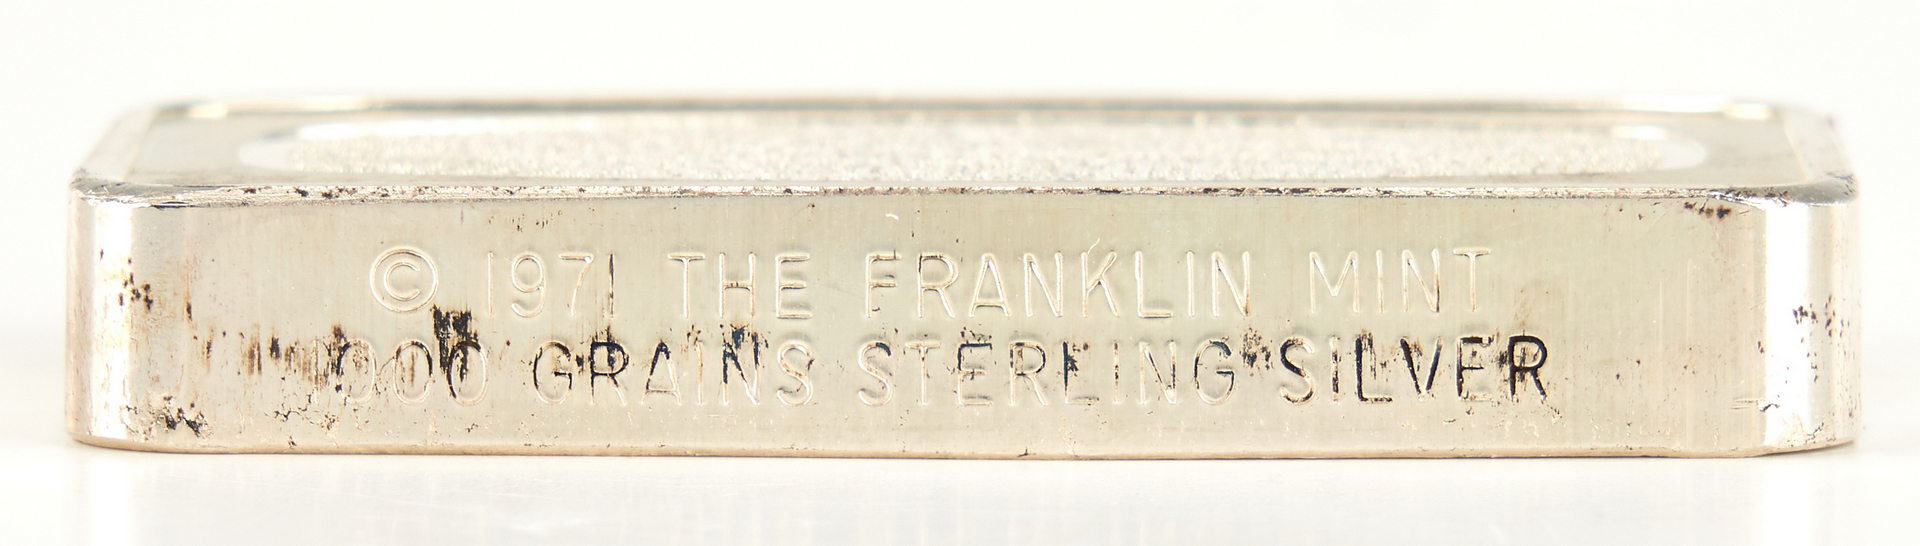 Lot 1168: America in Space Franklin Mint Sterling Silver Proof Set & Ingot